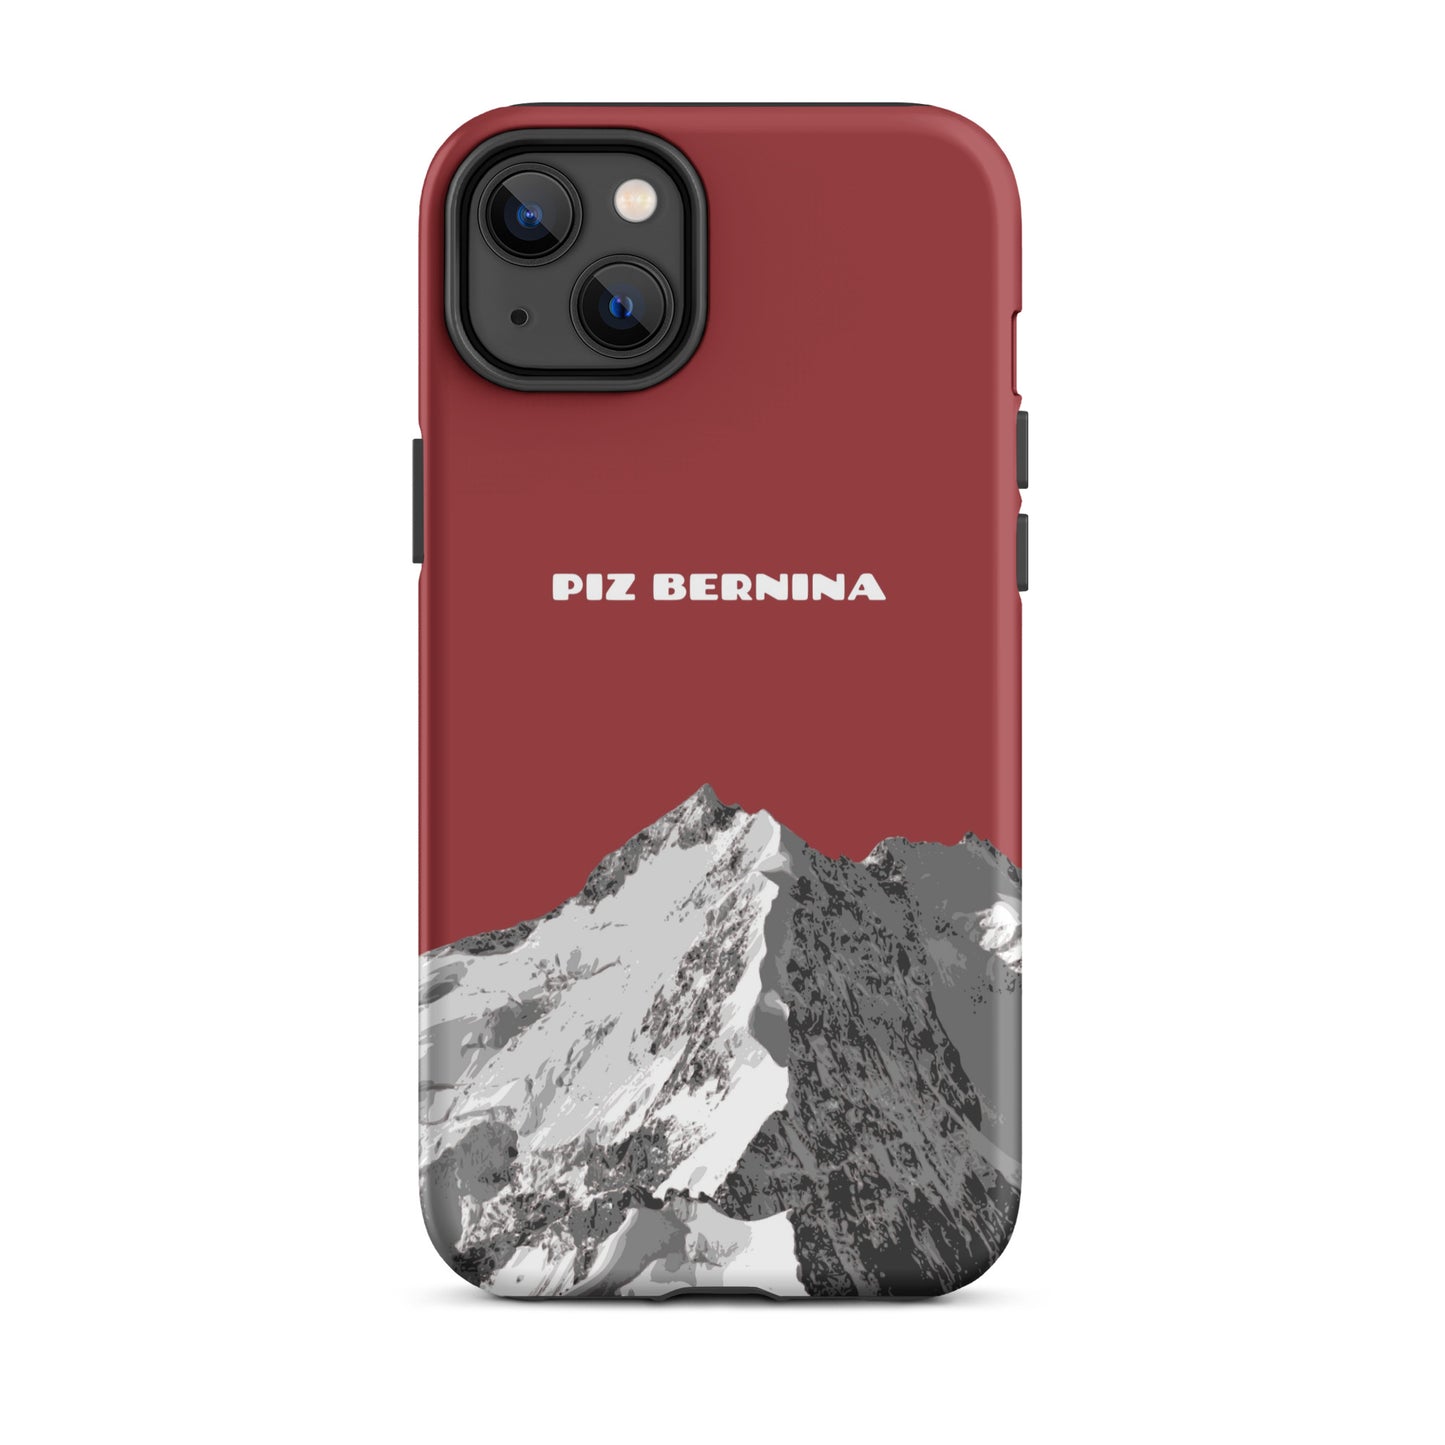 Hülle für das iPhone 14 Plus von Apple in der Farbe Rot, dass den Piz Bernina in Graubünden zeigt.